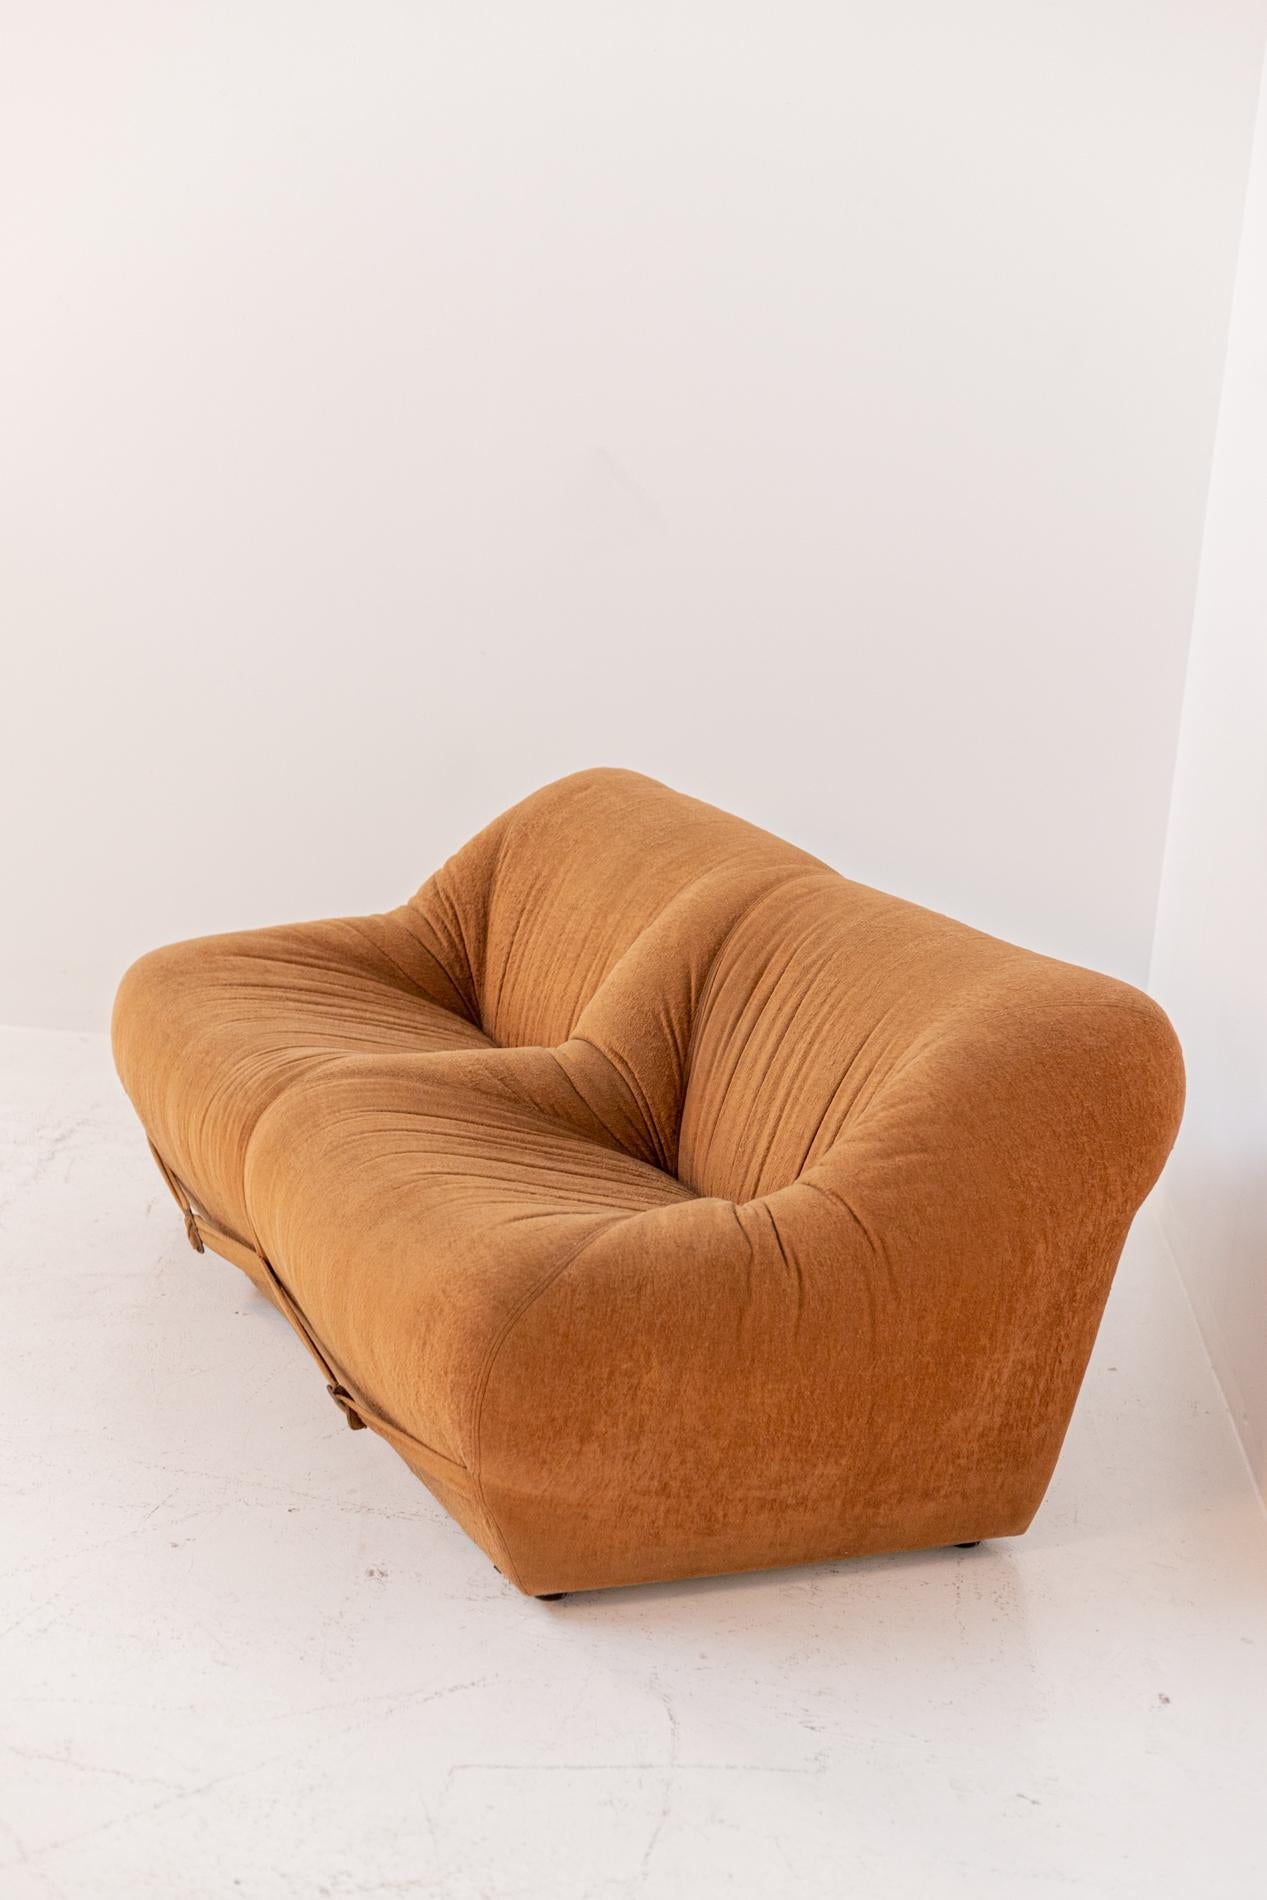 Space Age Italian Sofa in Orange Velvet Fabric 1